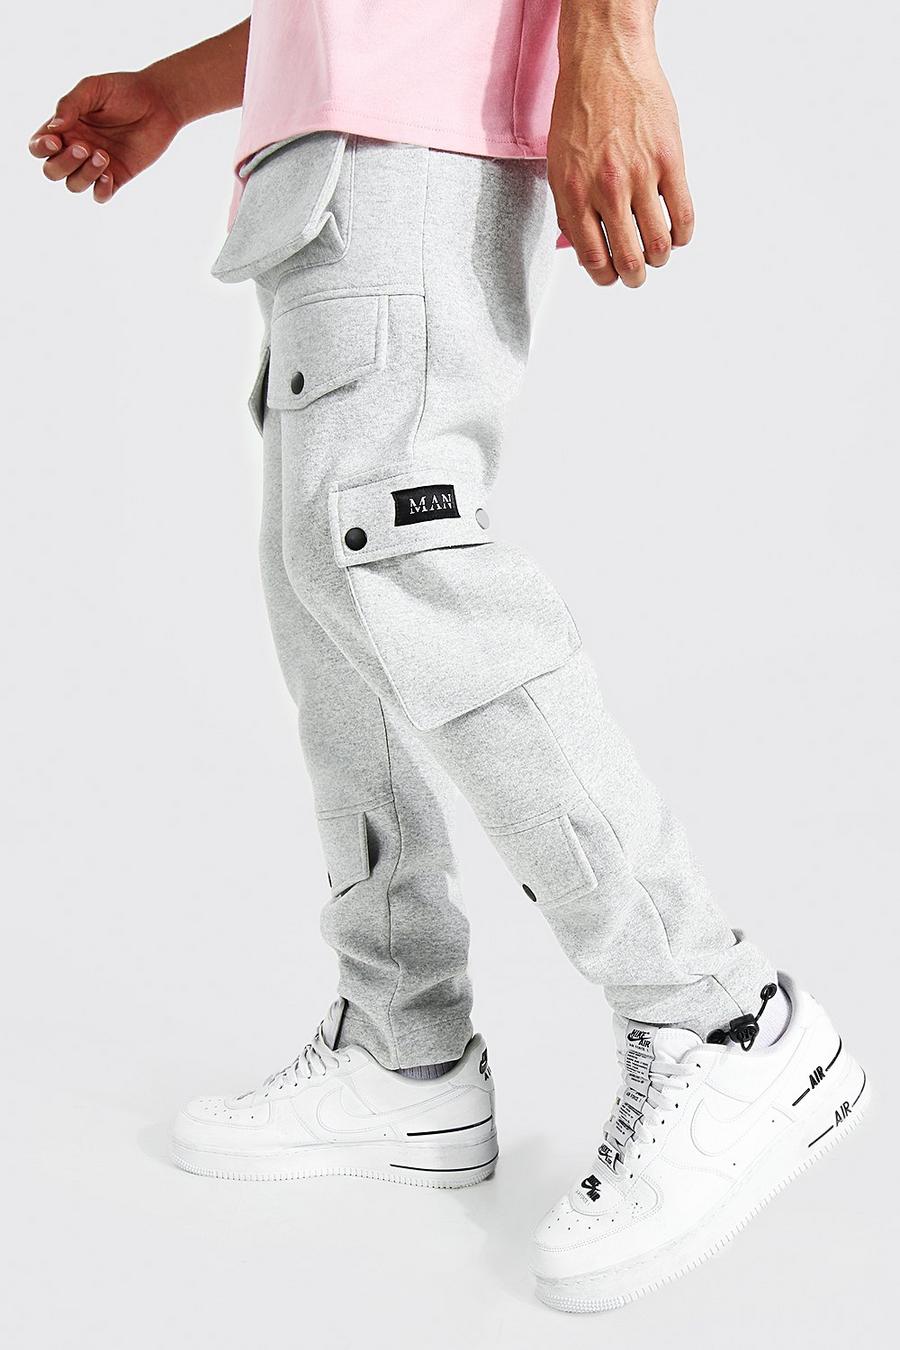 Pantaloni tuta stile Cargo con tasche e fermacorda sul fondo, Grey marl grigio